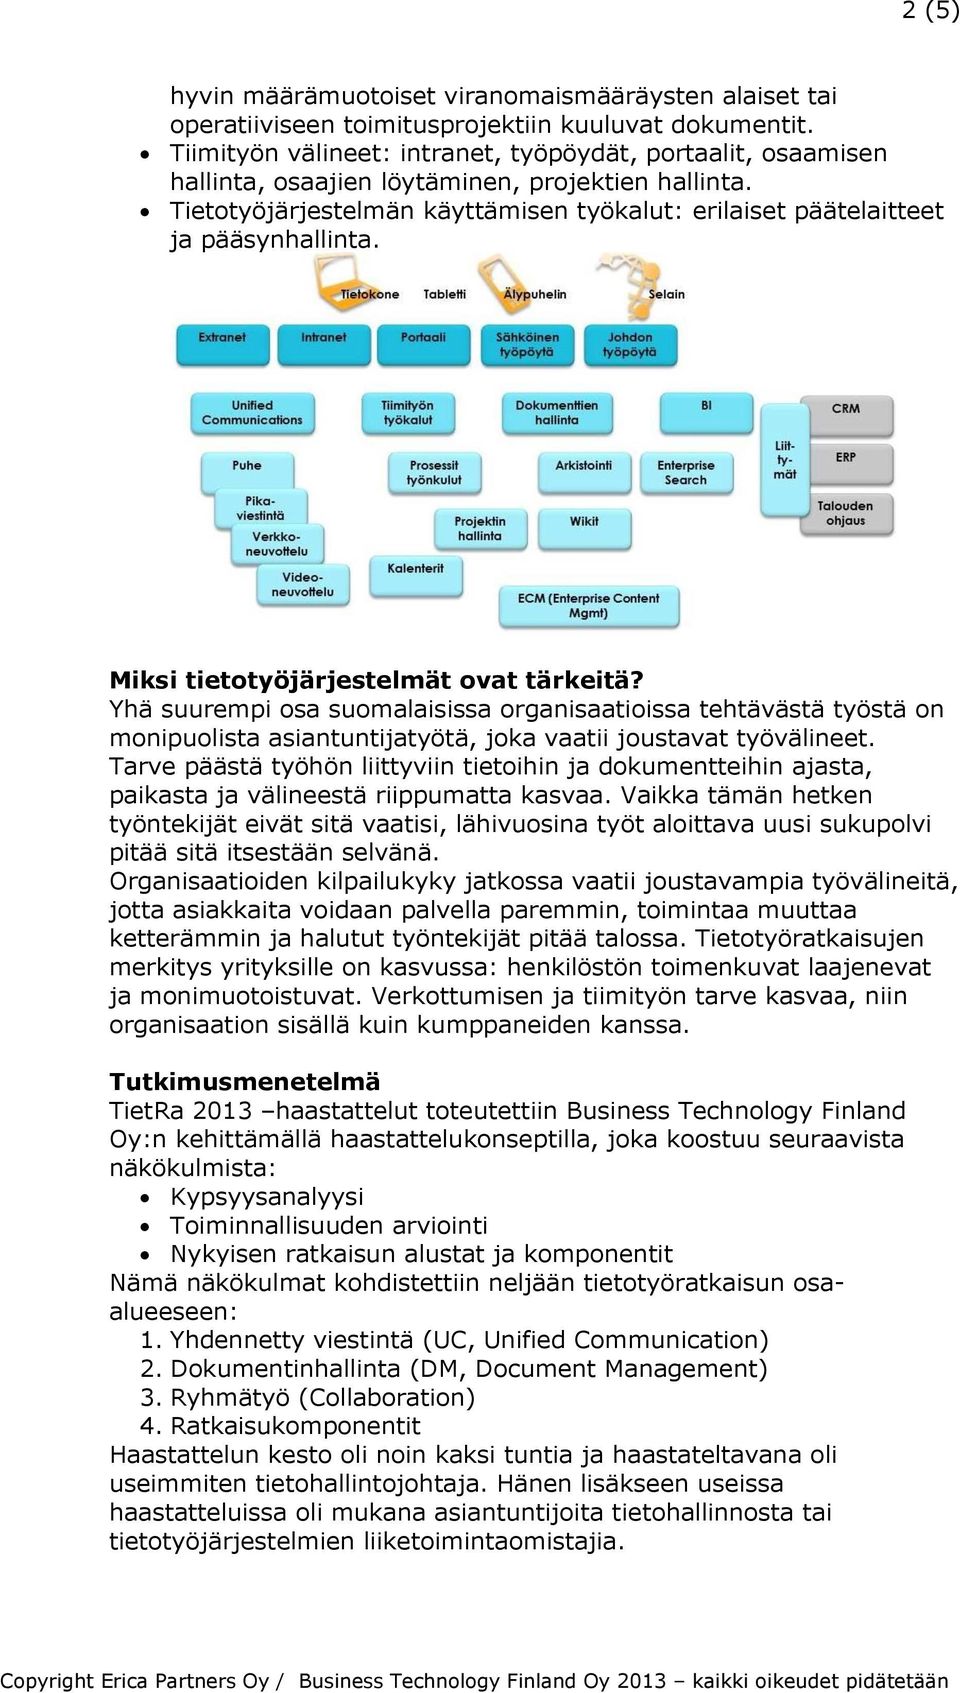 Miksi tietotyöjärjestelmät ovat tärkeitä? Yhä suurempi osa suomalaisissa organisaatioissa tehtävästä työstä on monipuolista asiantuntijatyötä, joka vaatii joustavat työvälineet.